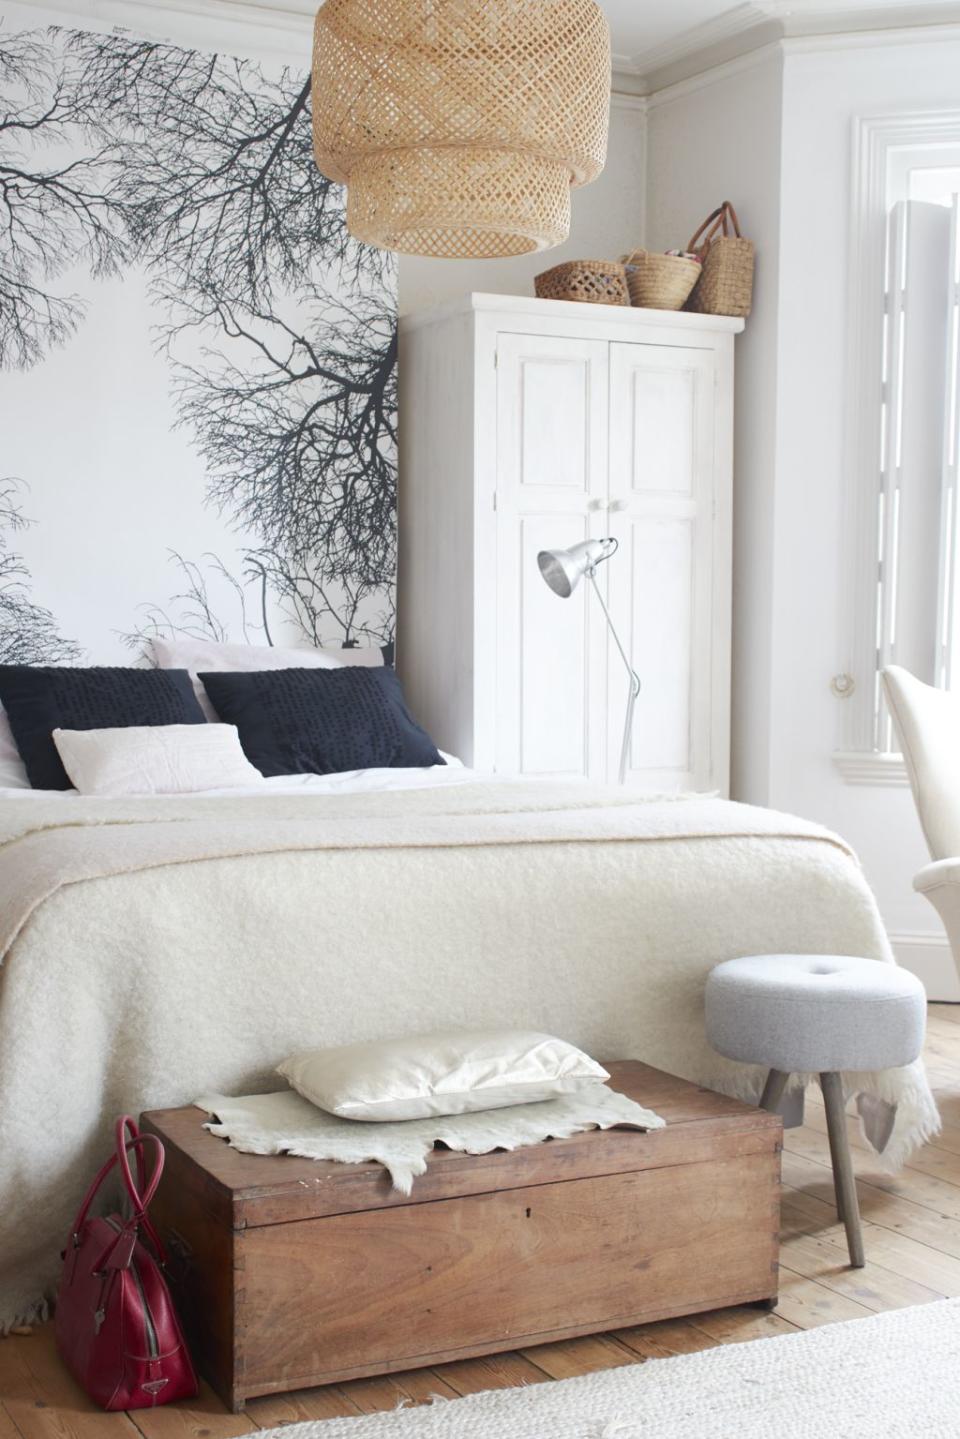 Make bedroom storage stylish and discreet